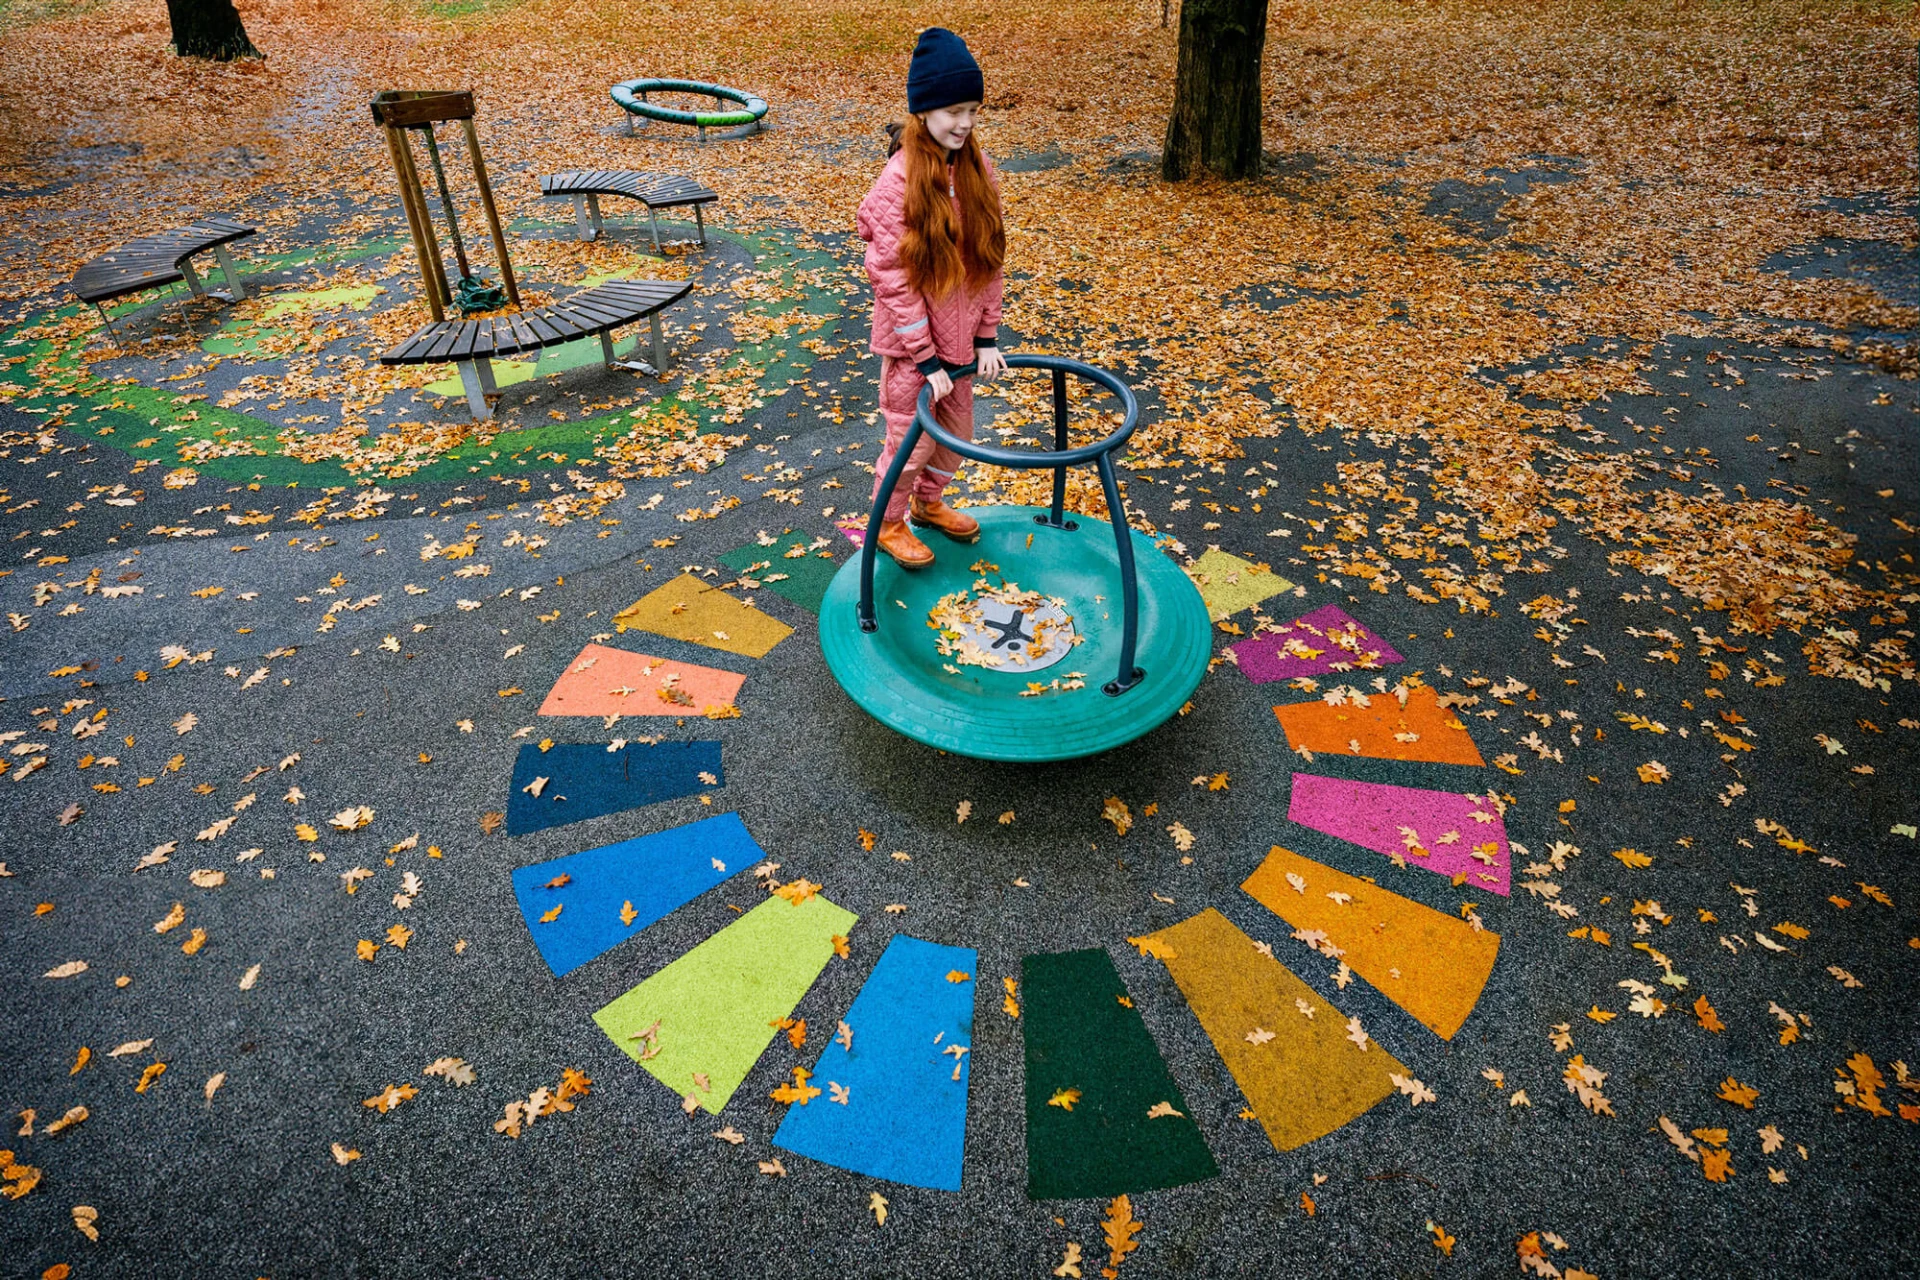 Mädchen spielt auf Spielplatz Spinner mit buntem Belag